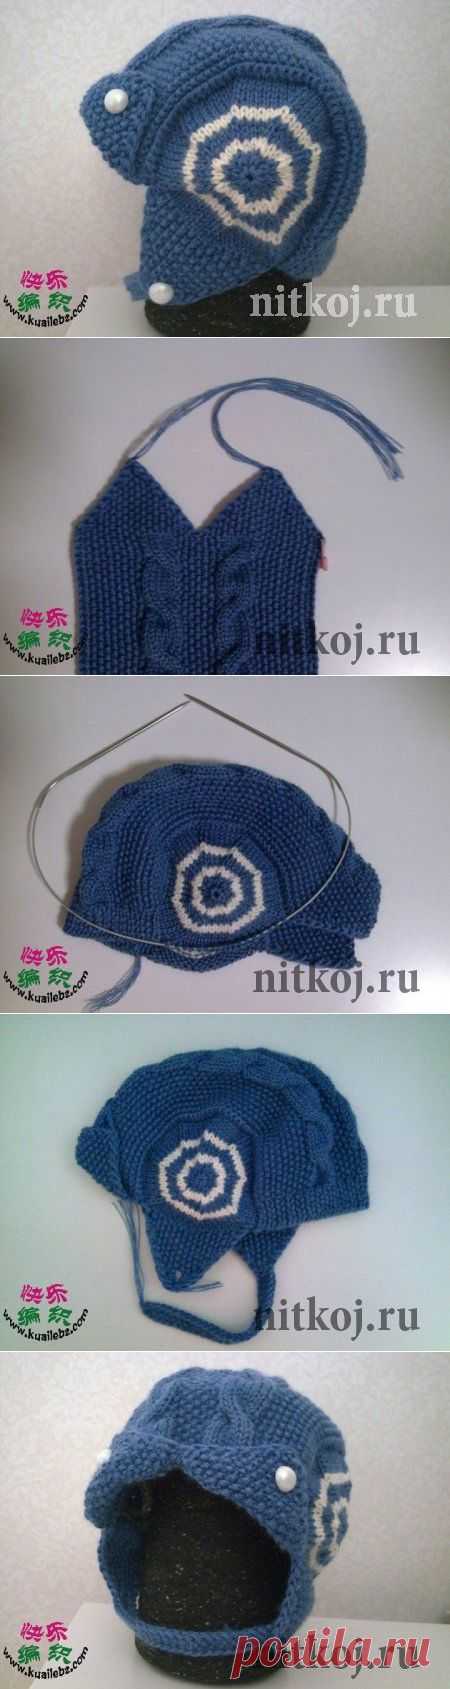 Шапочка-шлемик для мальчика.МК » Ниткой - вязаные вещи для вашего дома, вязание крючком, вязание спицами, схемы вязания